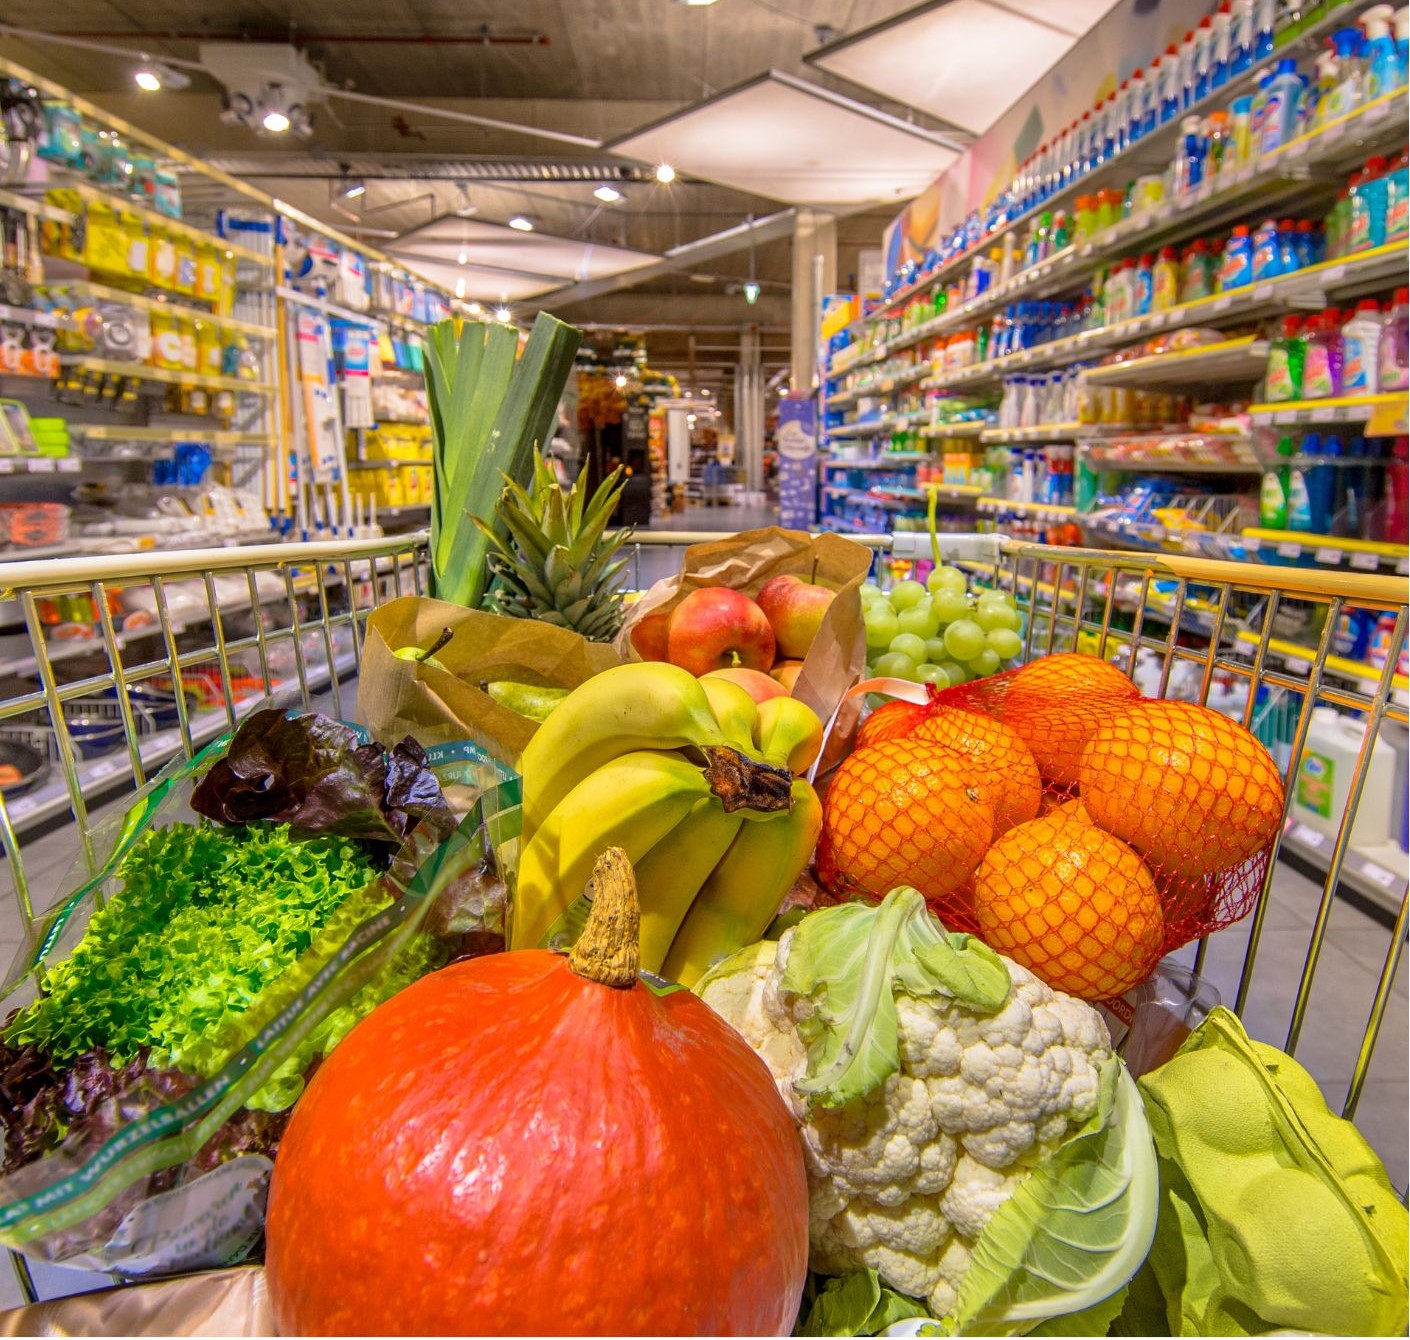 Einkaufswagen mit frischem Gemüse zwischen Regalen in einem Supermarkt